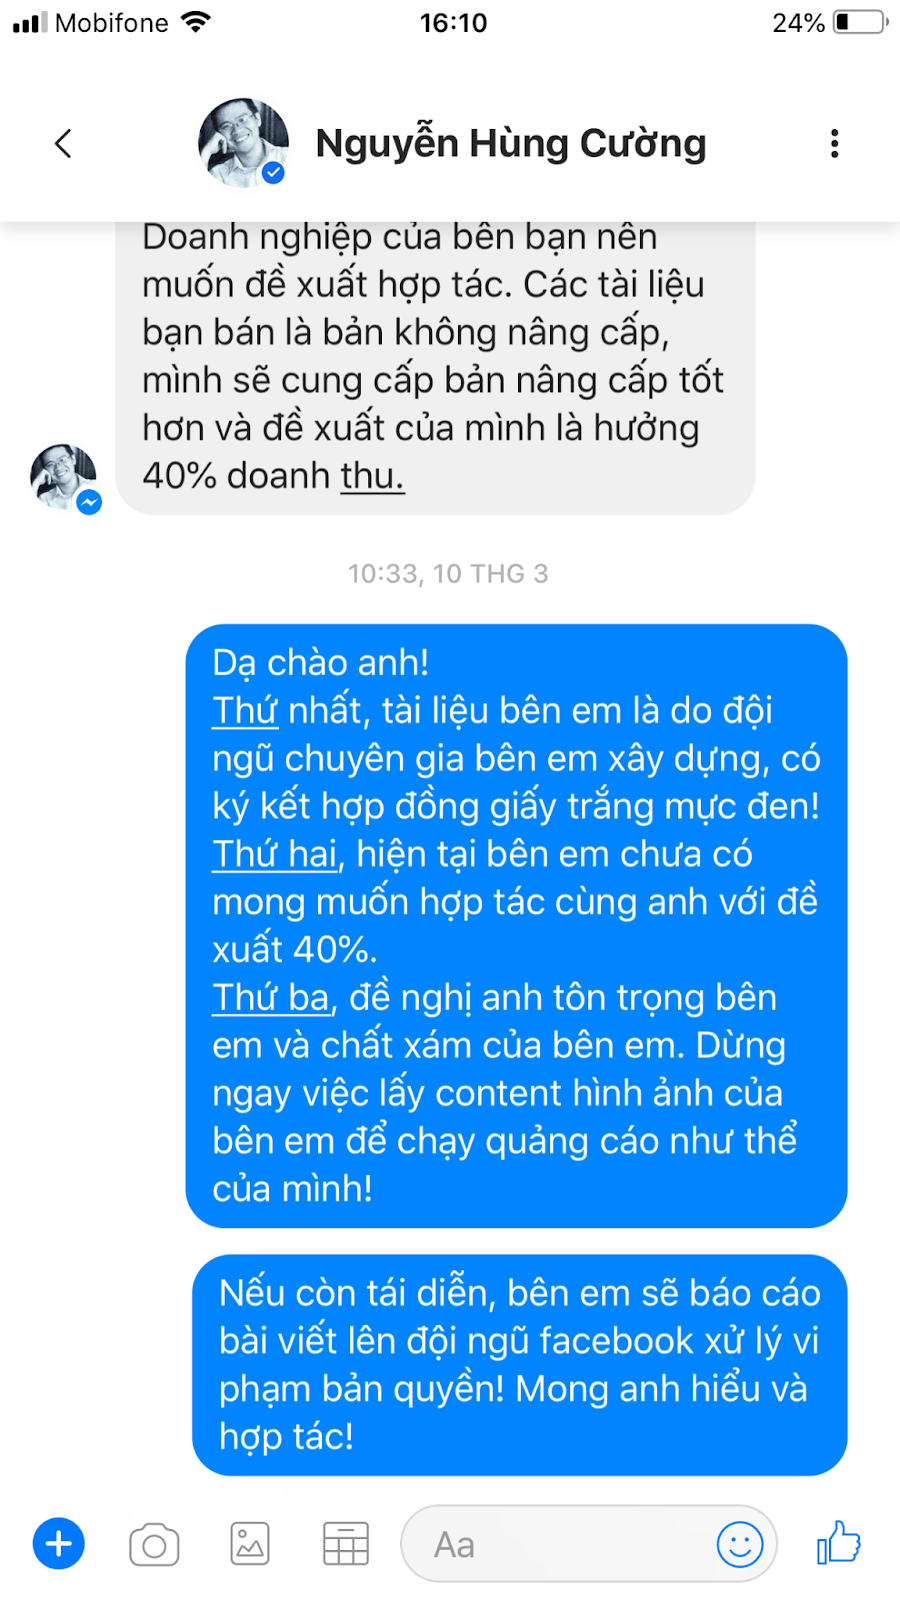 Thực hư chuyện Sodes lừa đảo - yêu cầu Mr. Nguyễn Hùng Cường ngừng đăng tin sai sự thật!